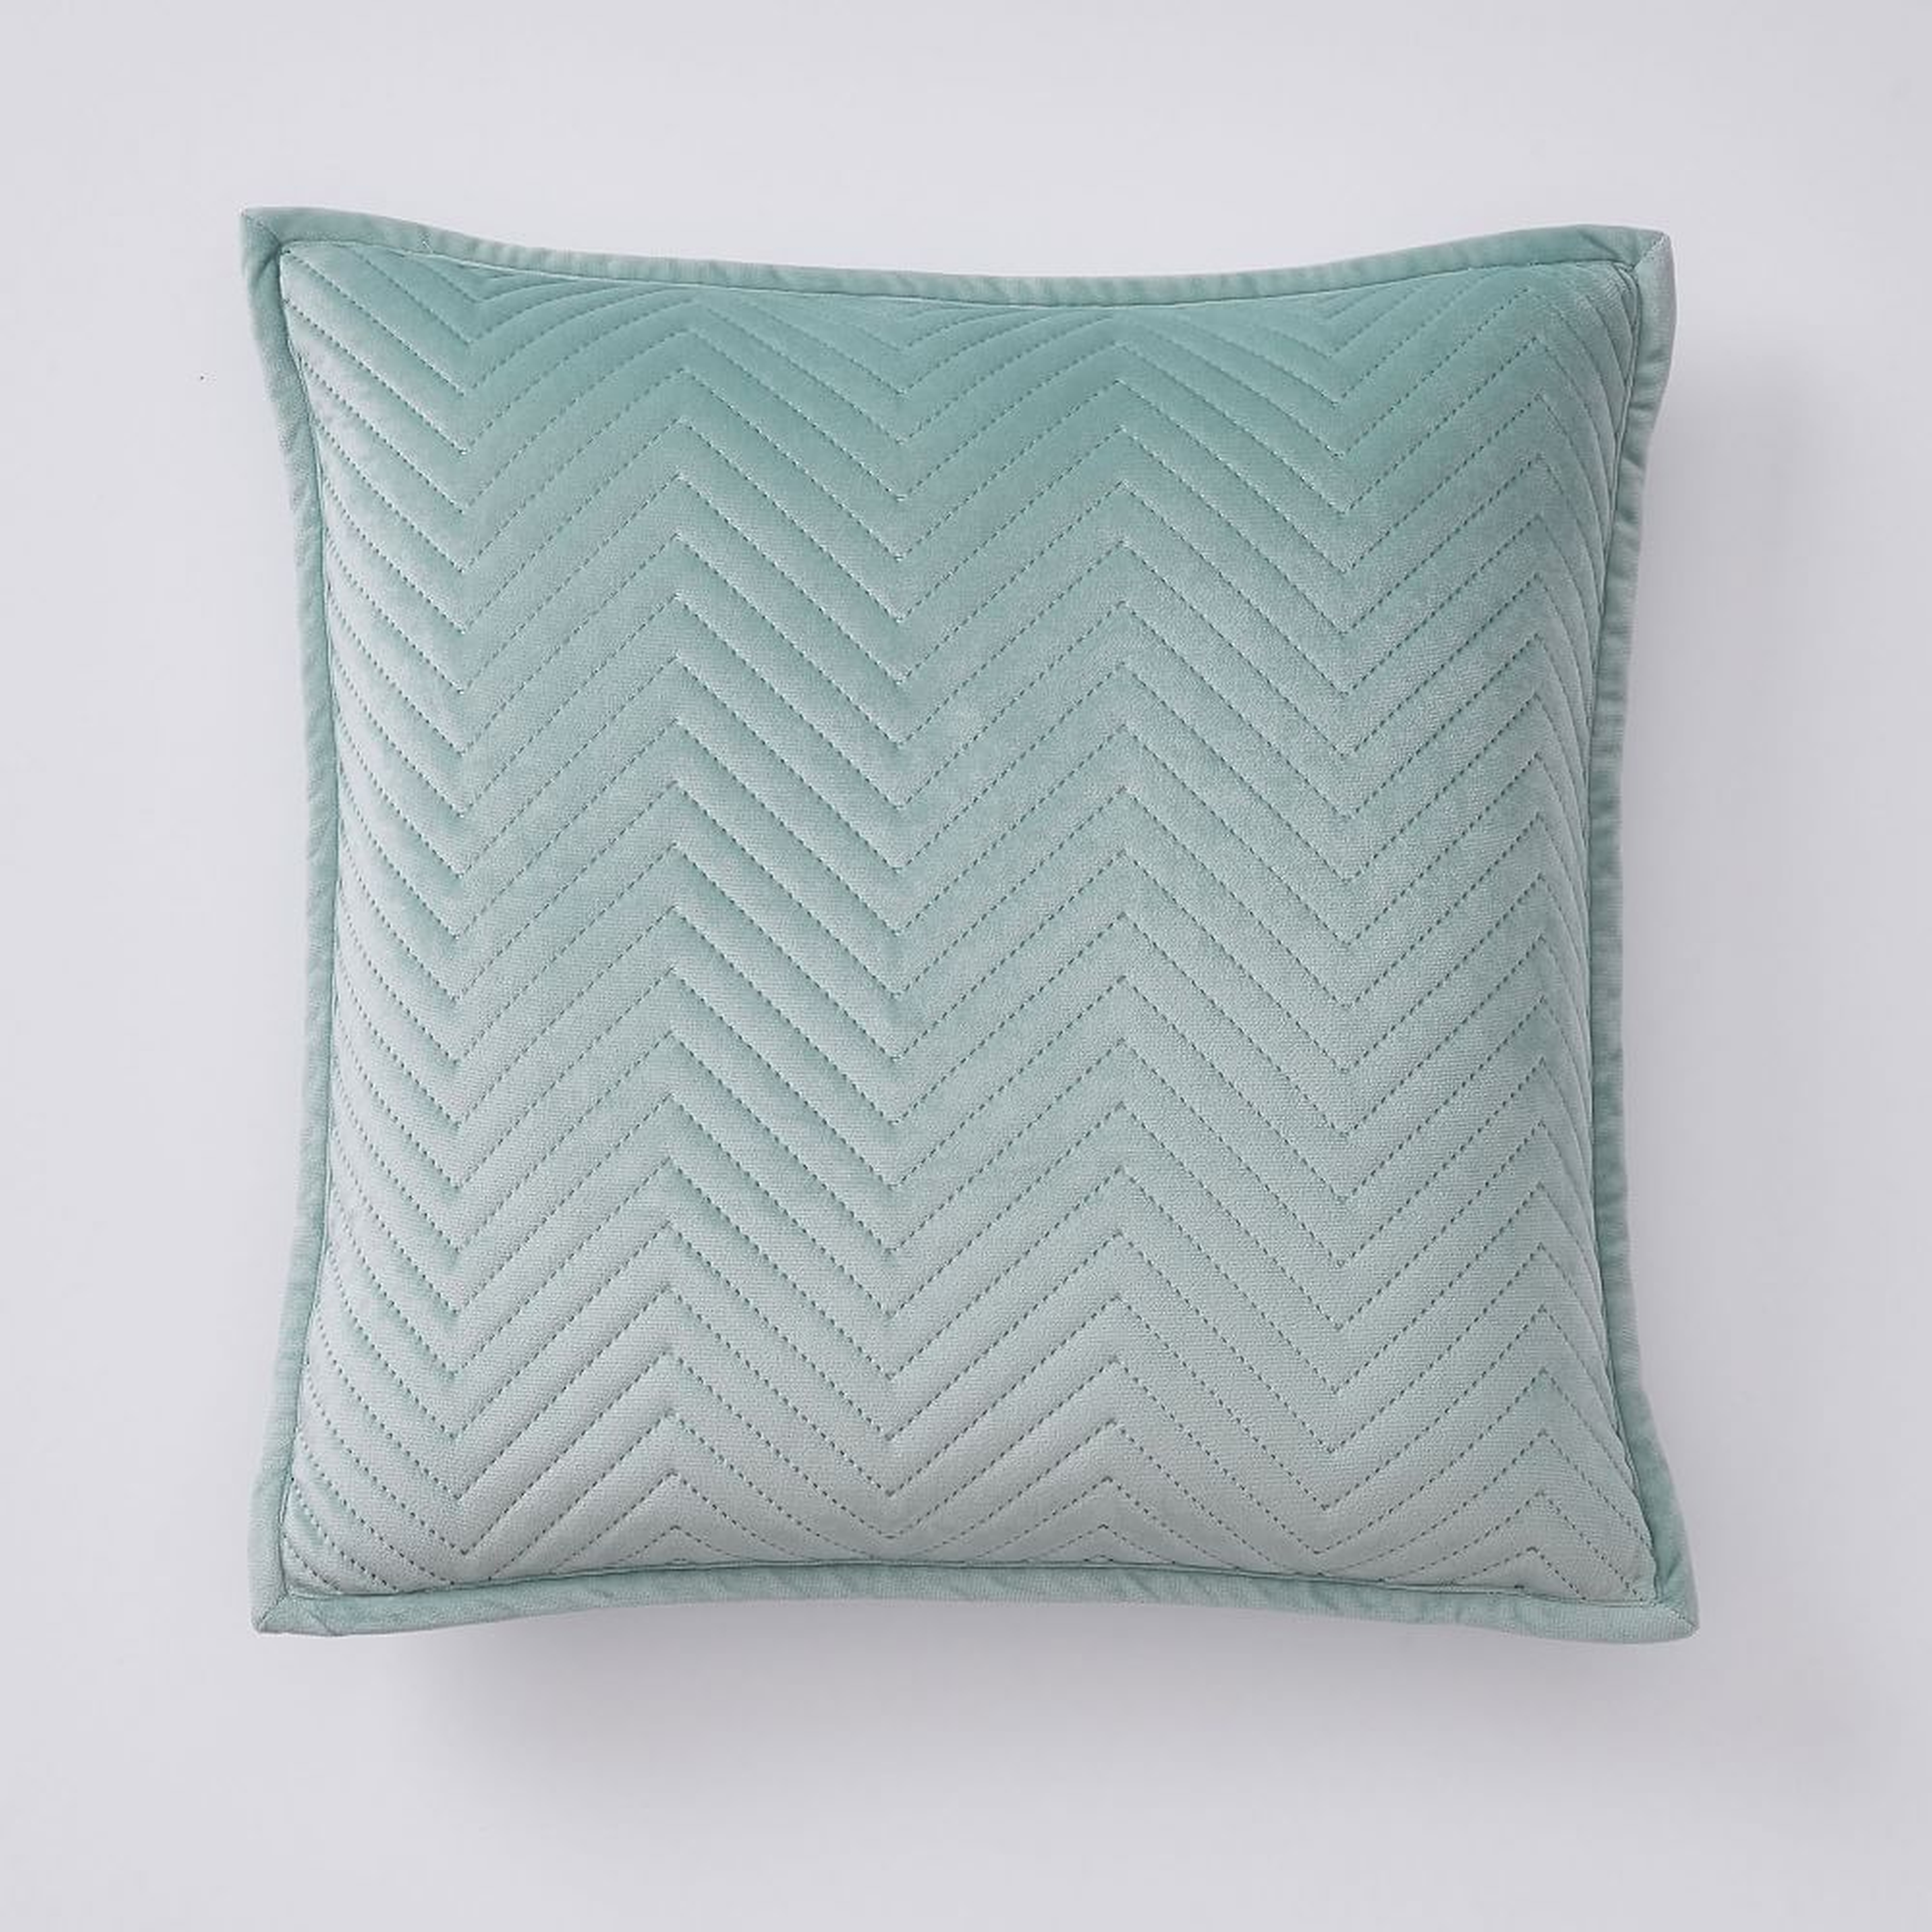 Luxe Velvet Pillow Cover, 18x18, Teal Mist - Pottery Barn Teen